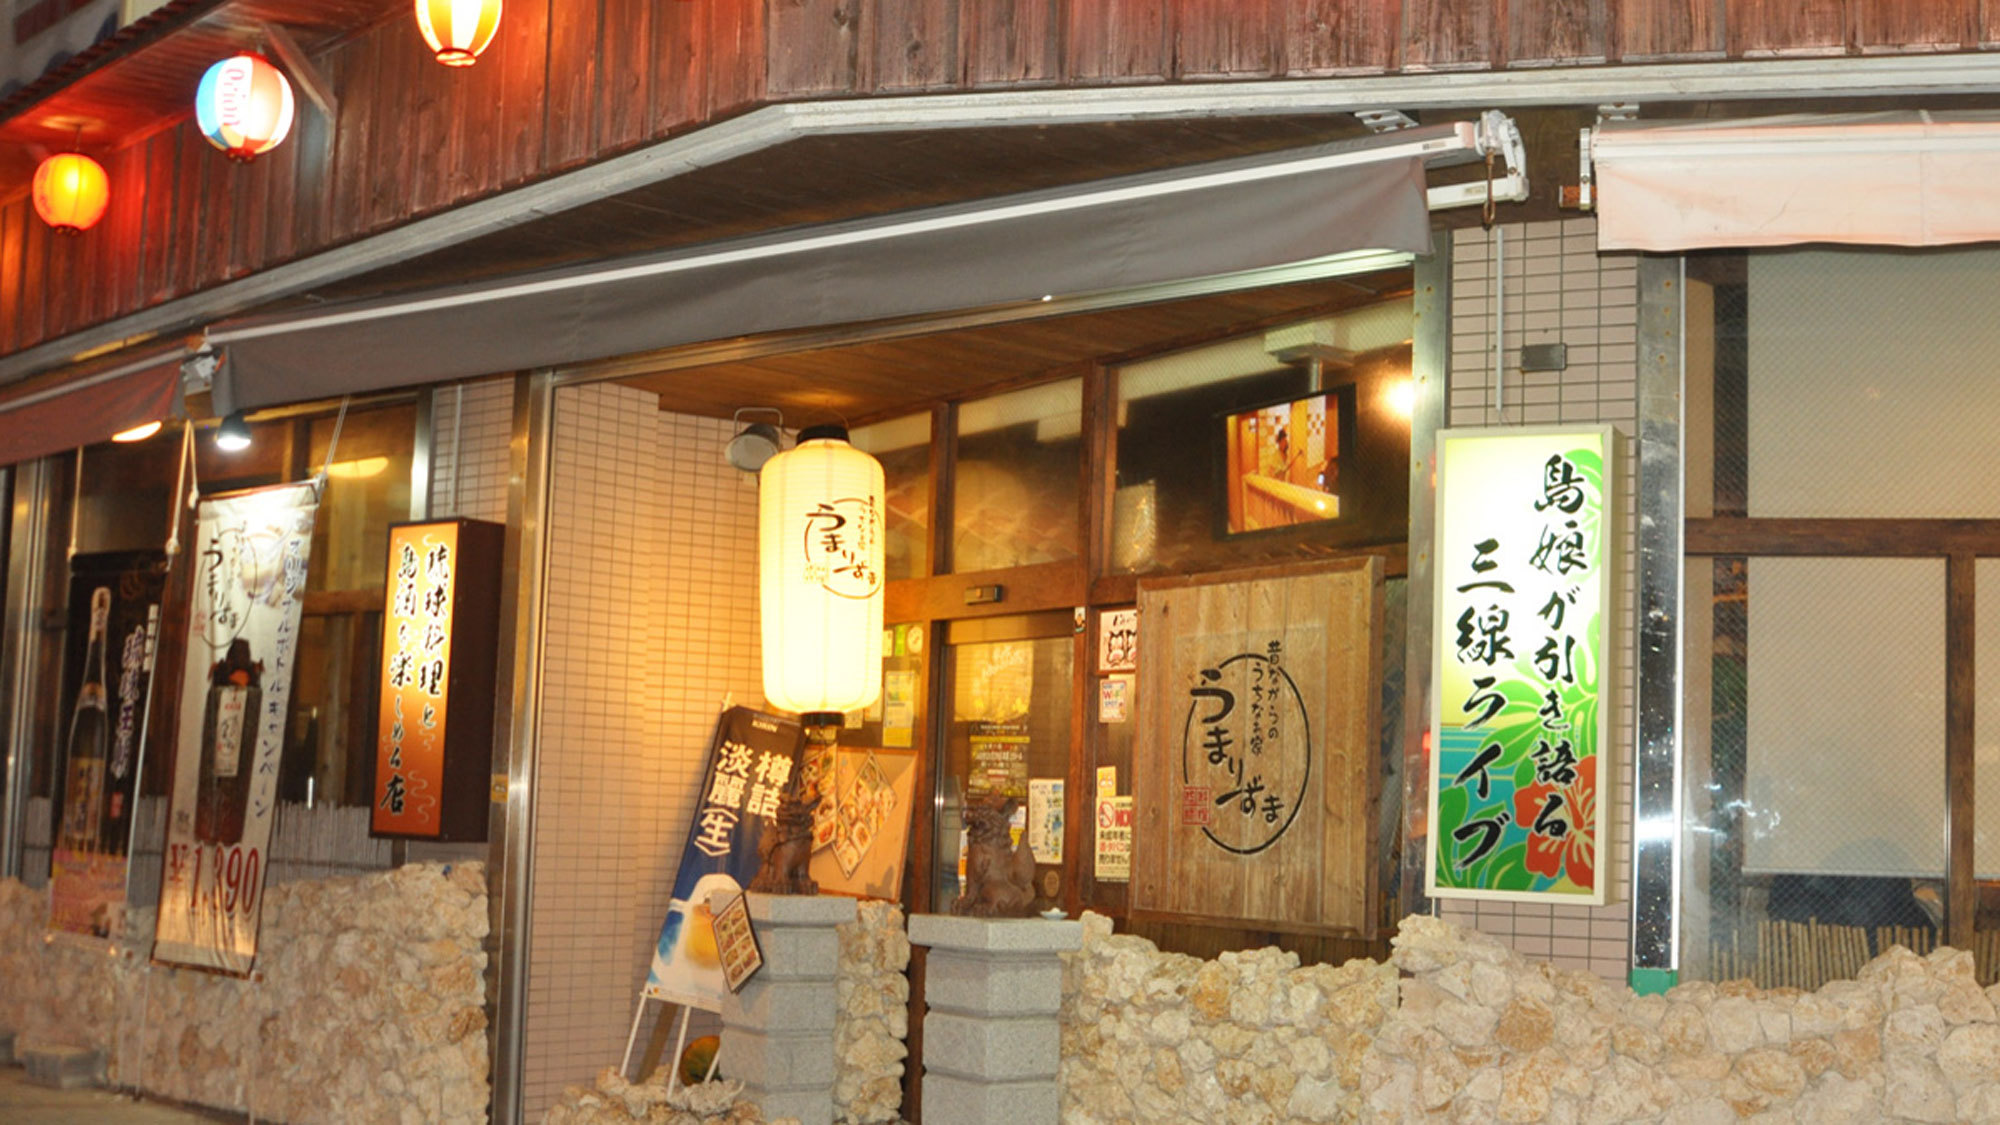 【周辺】沖縄料理店では三線ライブも楽しめます